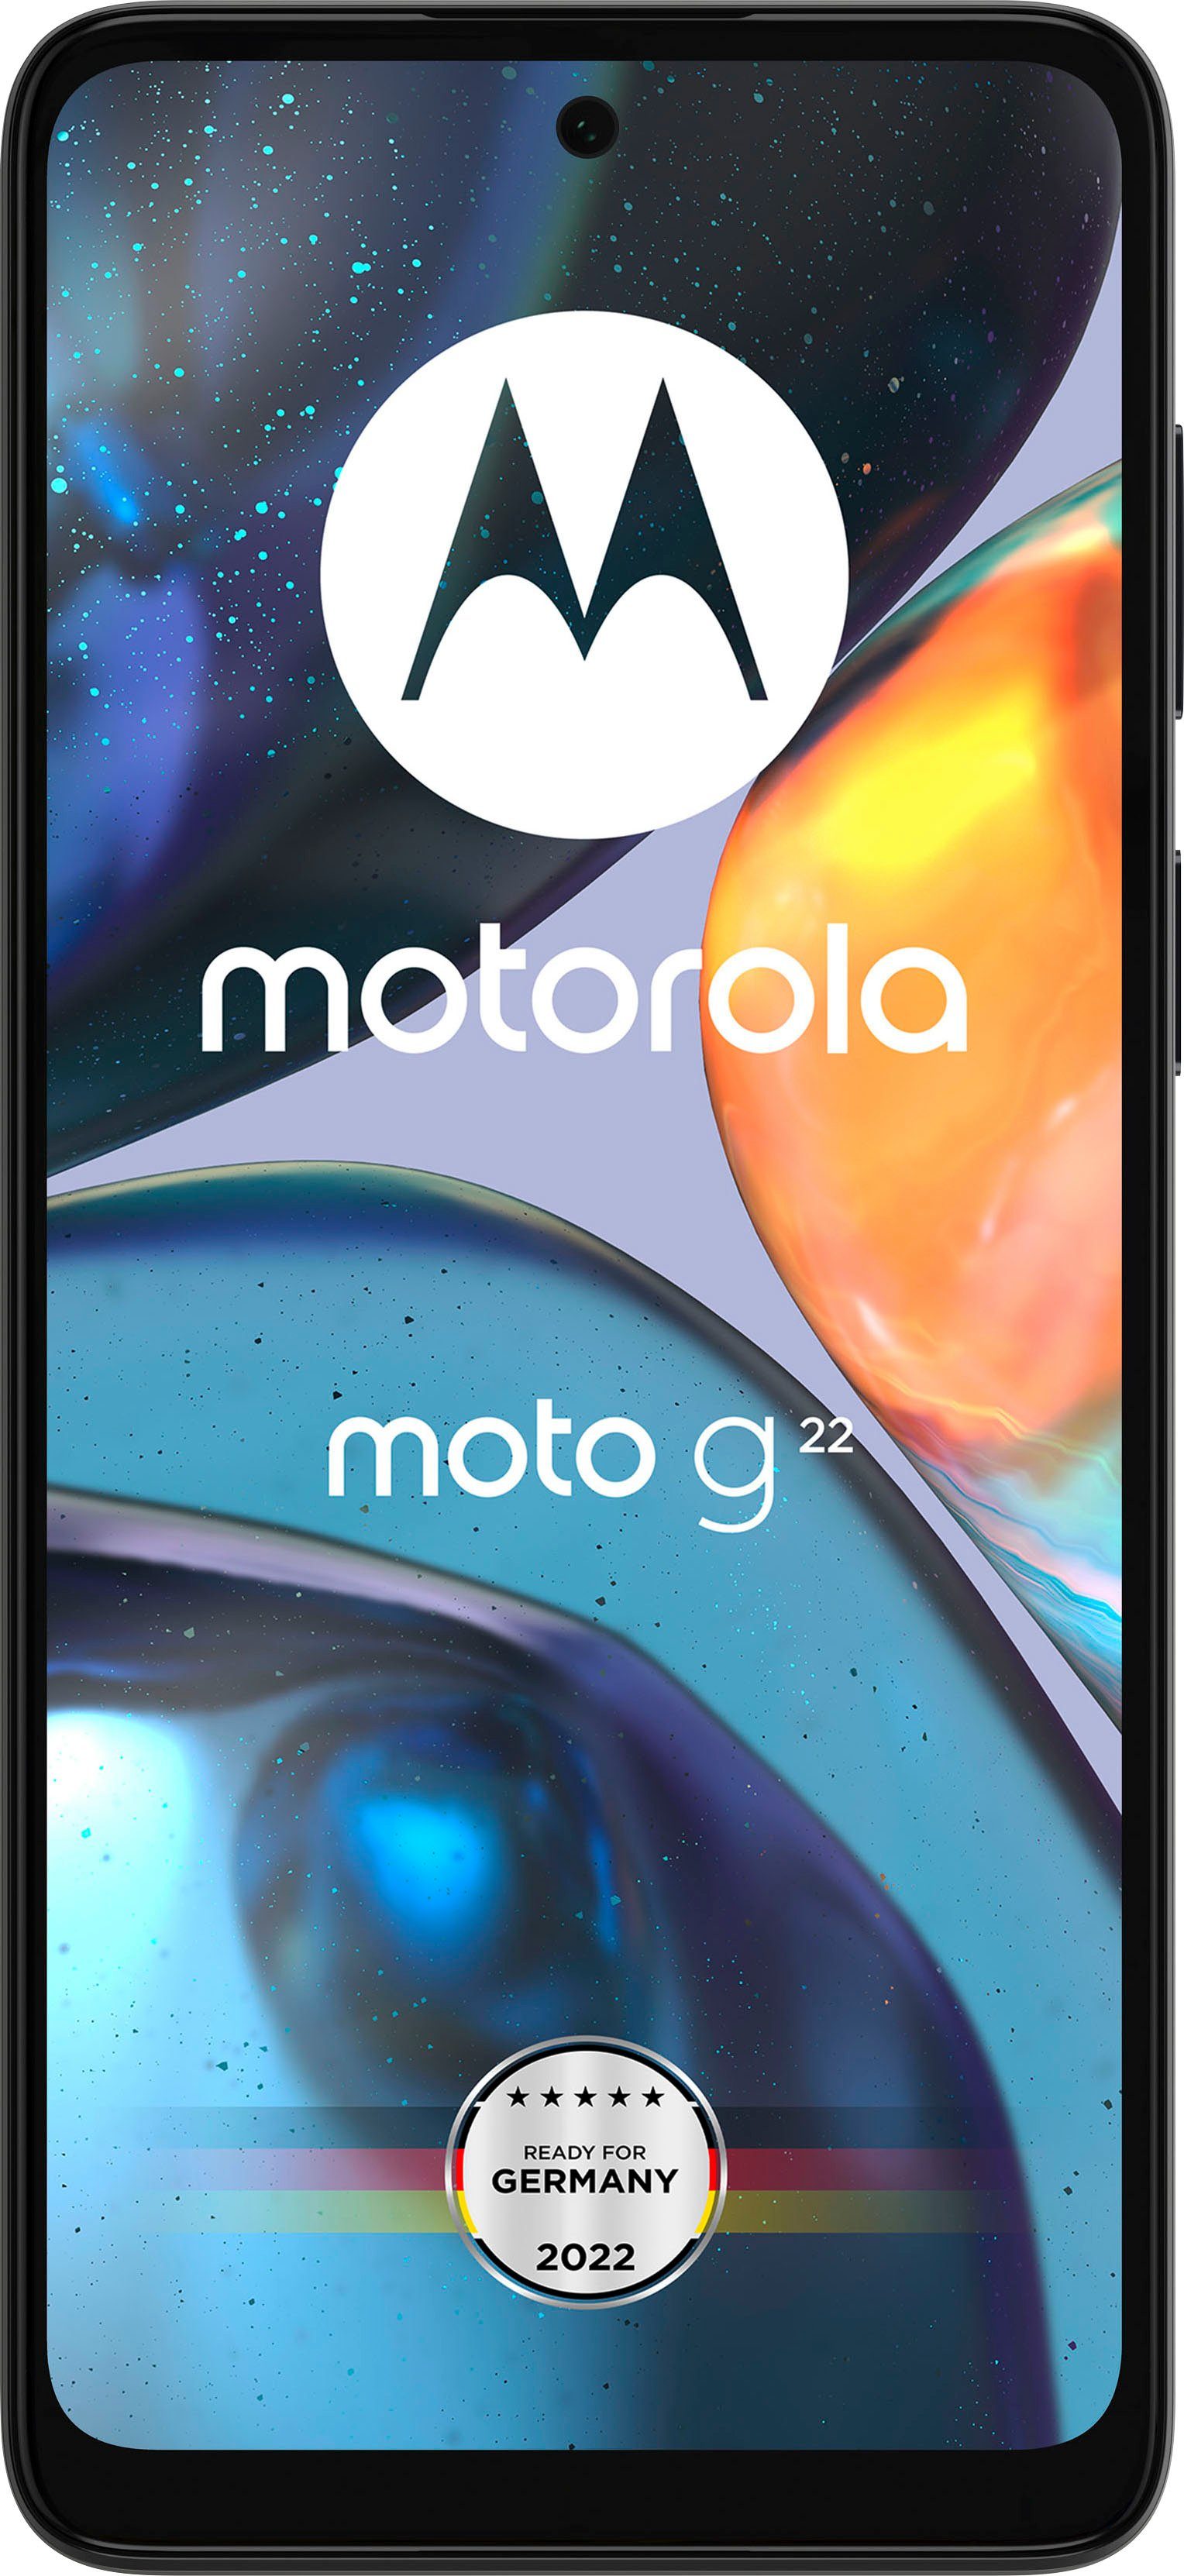 Motorola Handys online kaufen » Motorola Smartphones | OTTO